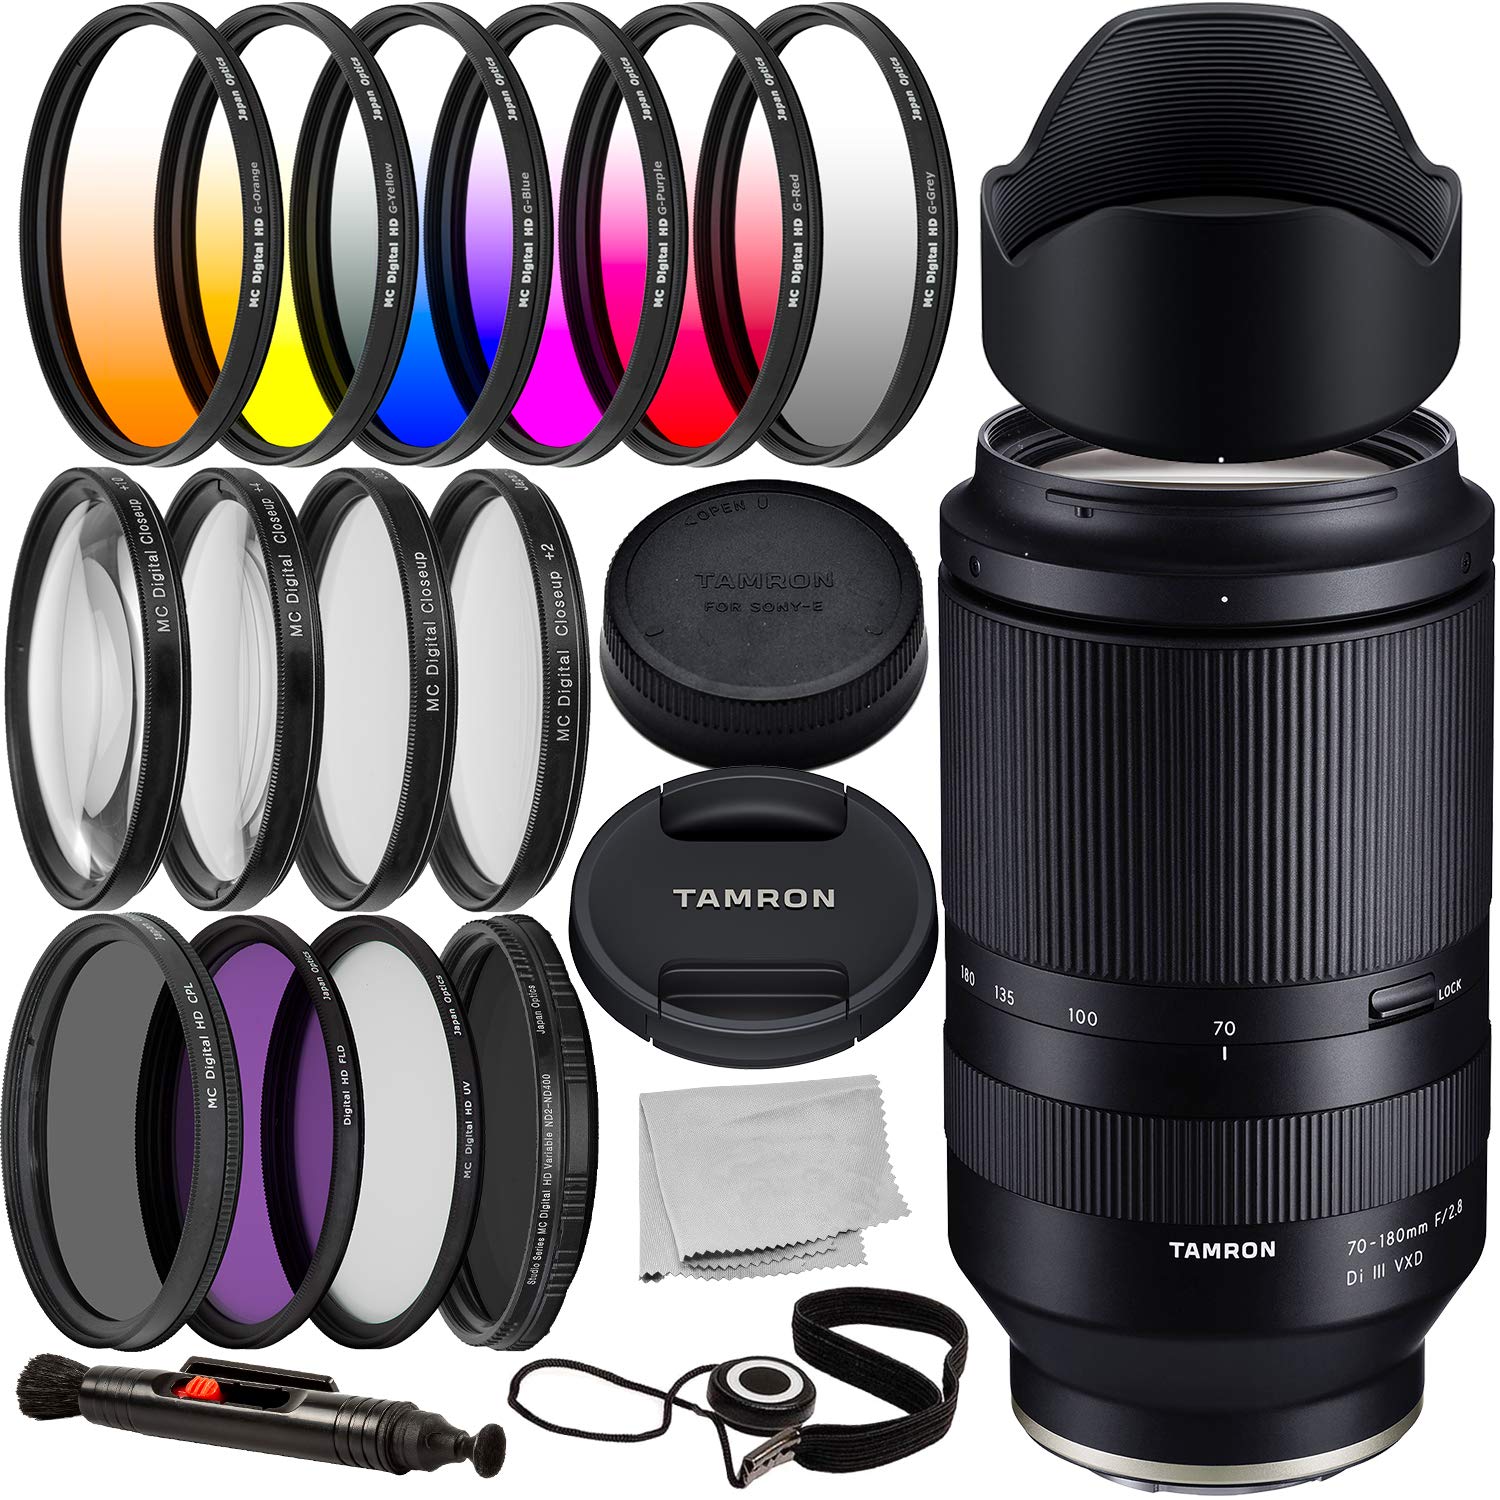 タムロン Tamron 70-180mm f2.8 Di III VXD Lens with Essential Accessory Bundle - Includes 6PC Gradual Color Filter Kit